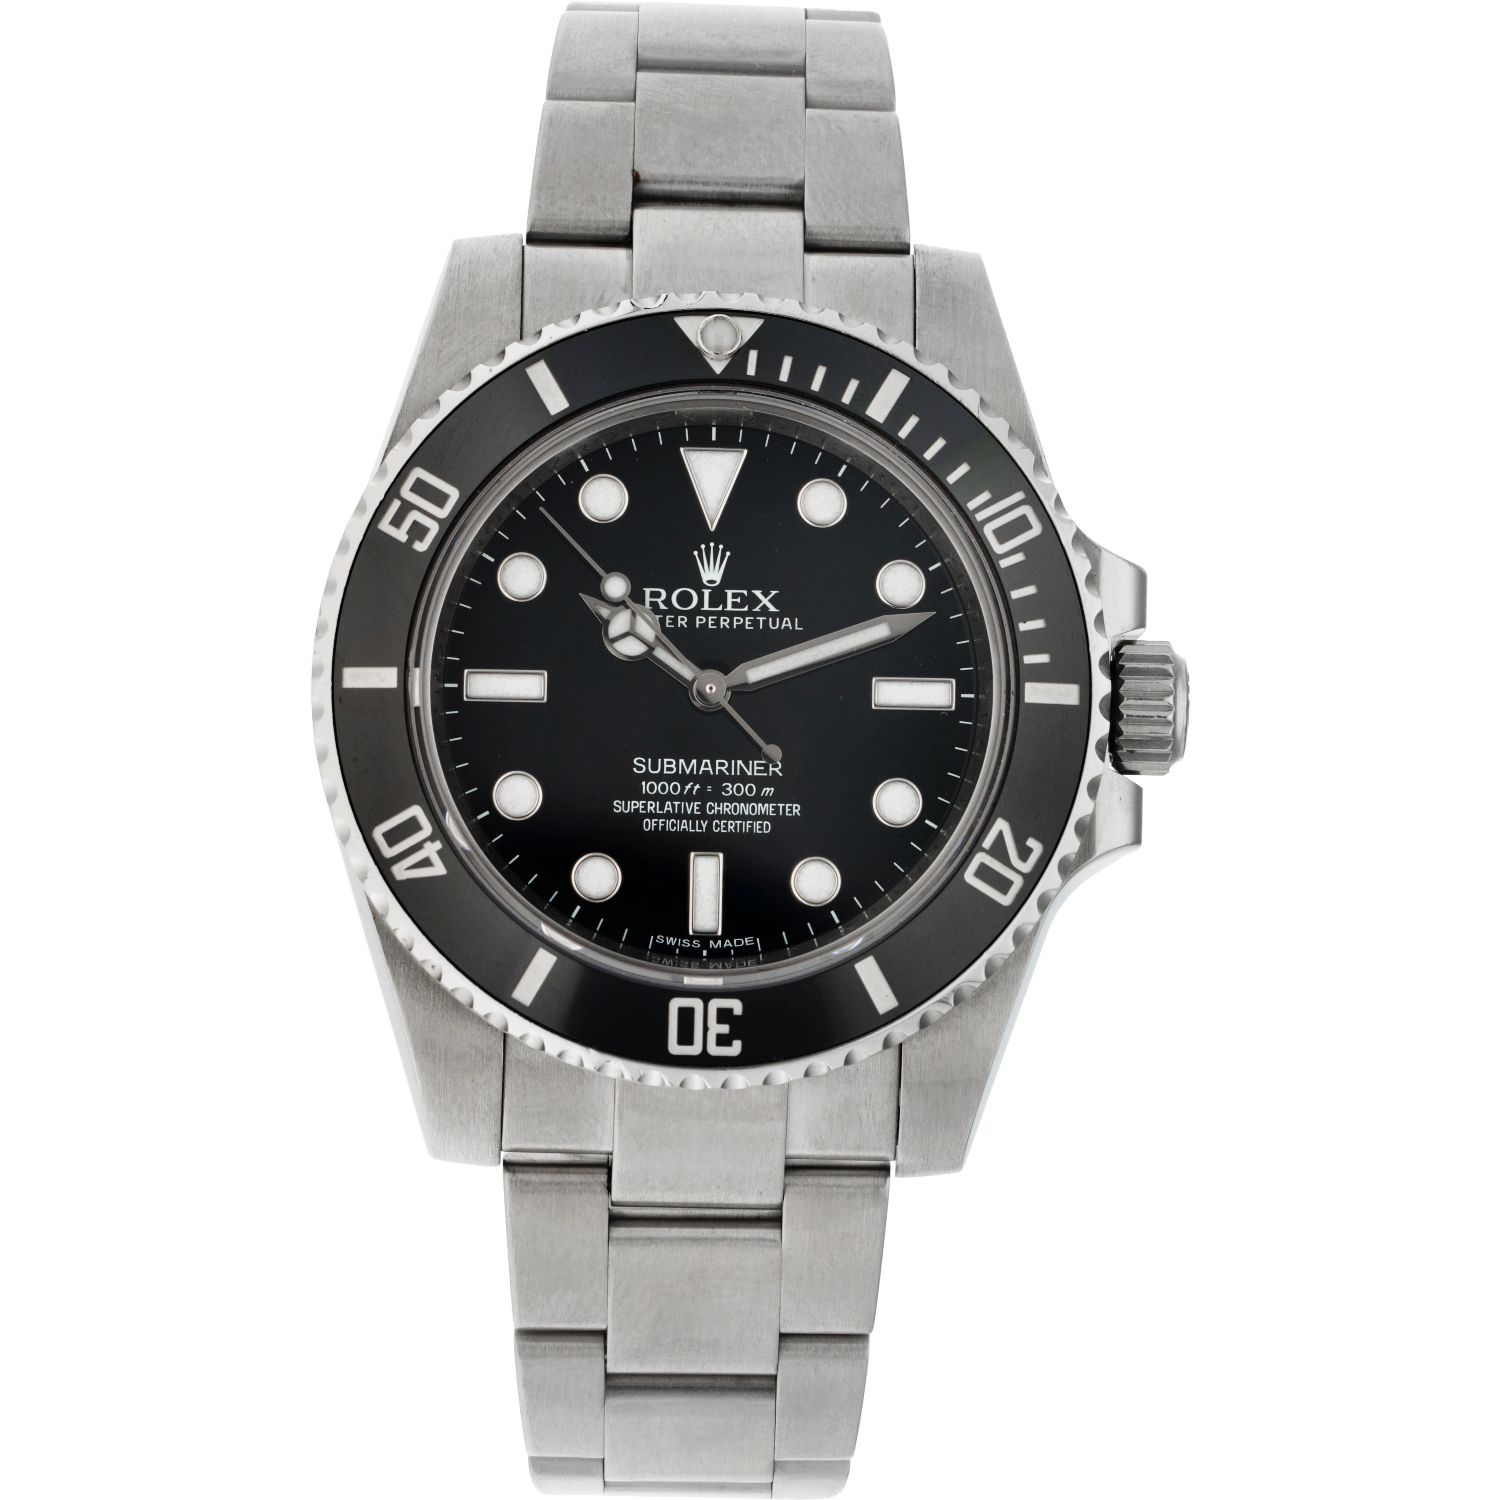 Rolex Submariner 114060 no date - Men's watch - approx. 2010. Gehäuse: Stahl - A&hellip;